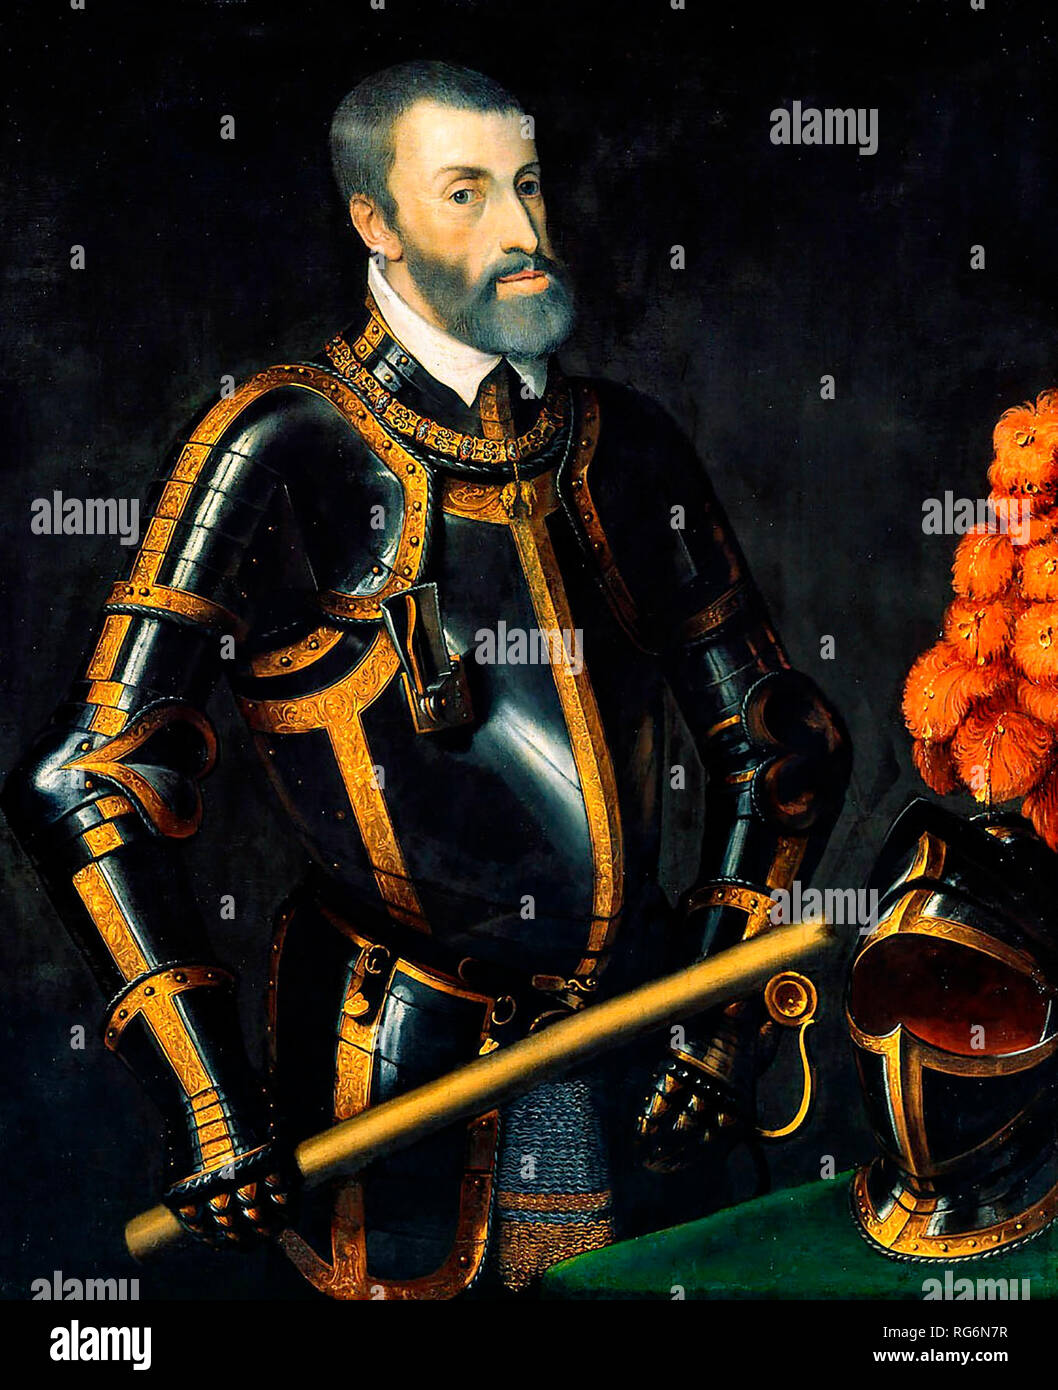 Un vieux Karl V (Charles V) (également connu sous le nom de Don Carlos I d'Espagne), souverain de l'Empire romain saint - Titien, vers 1550 Banque D'Images